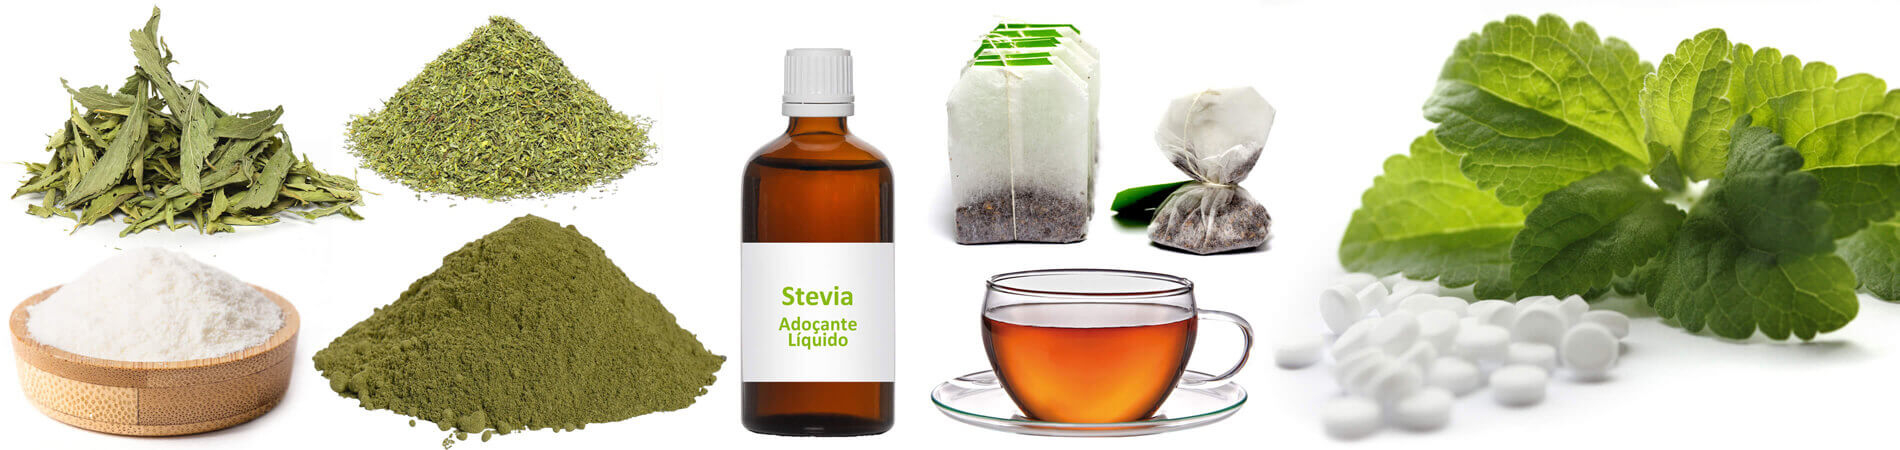 Stevia como um adoçante - Tudo sobre o substituto do açúcar 